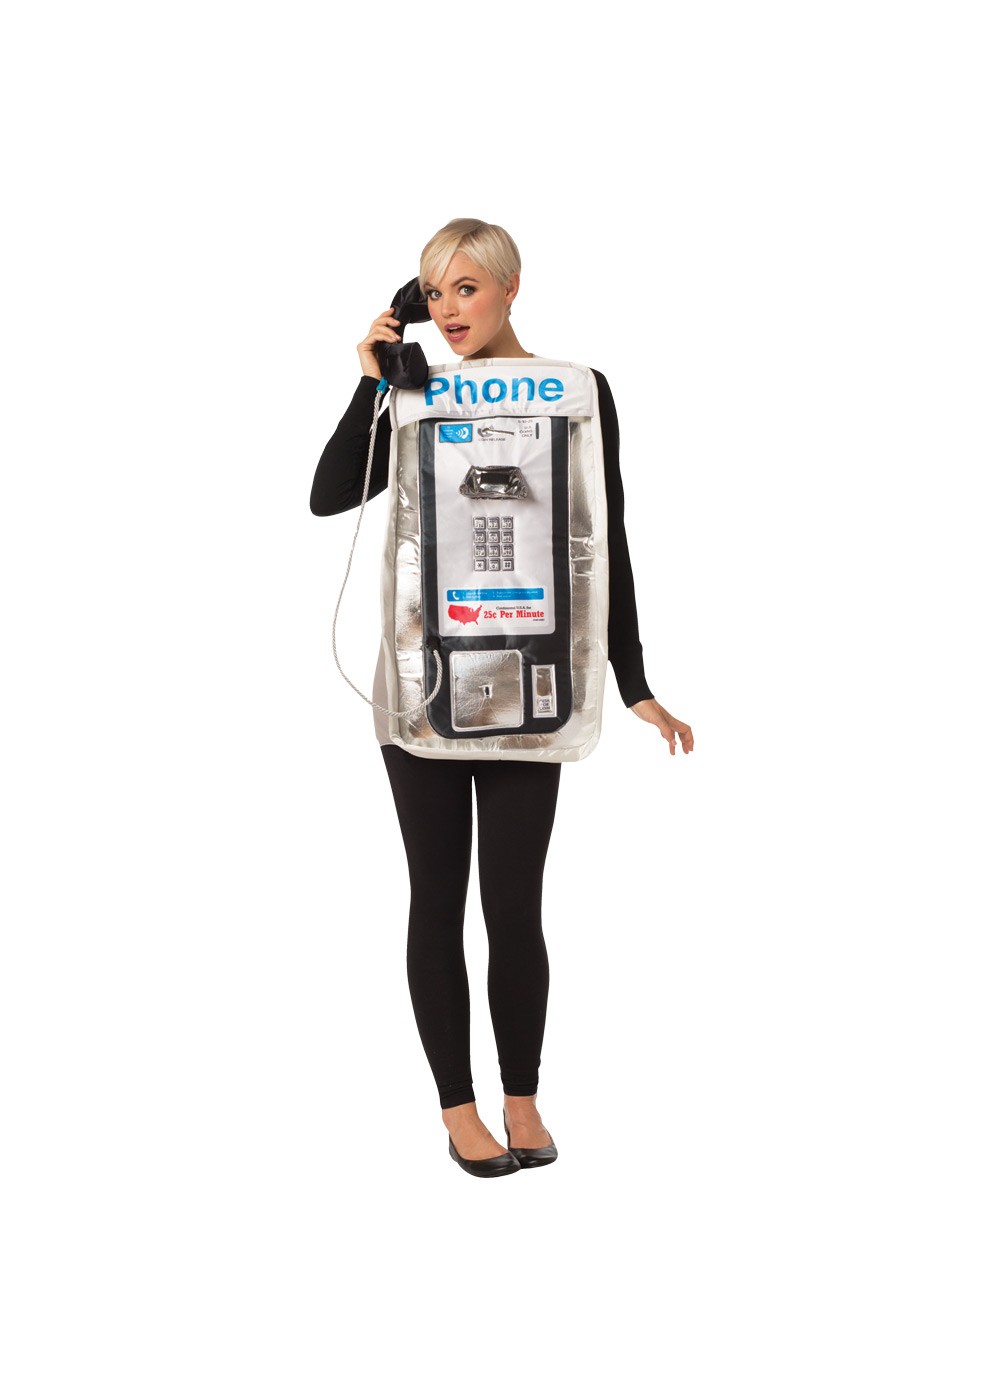 Unisex Phone Costume